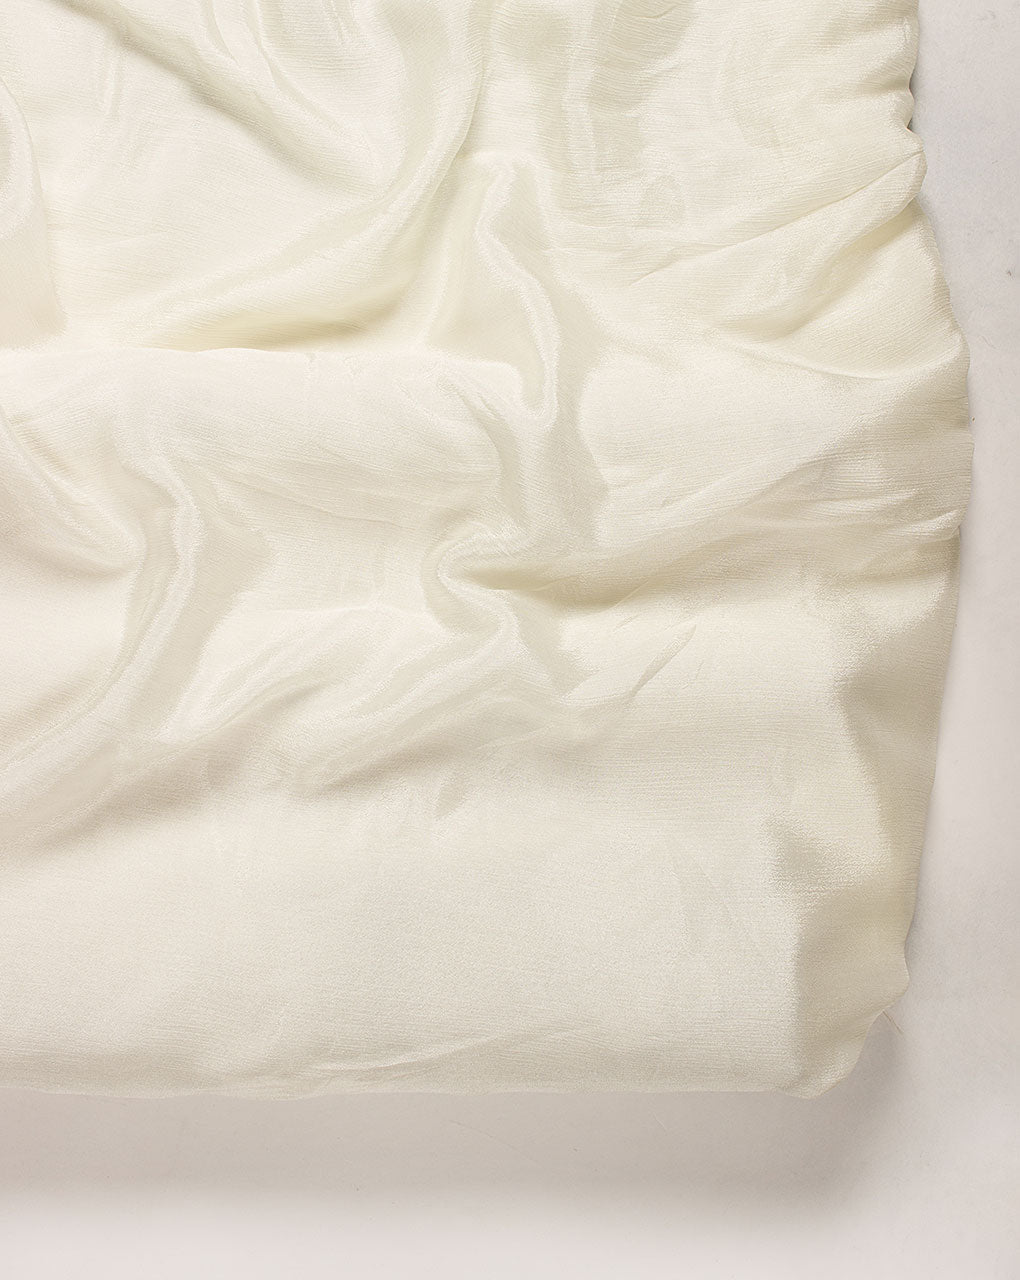 Off-White Plain Viscose Chinnon Chiffon Fabric